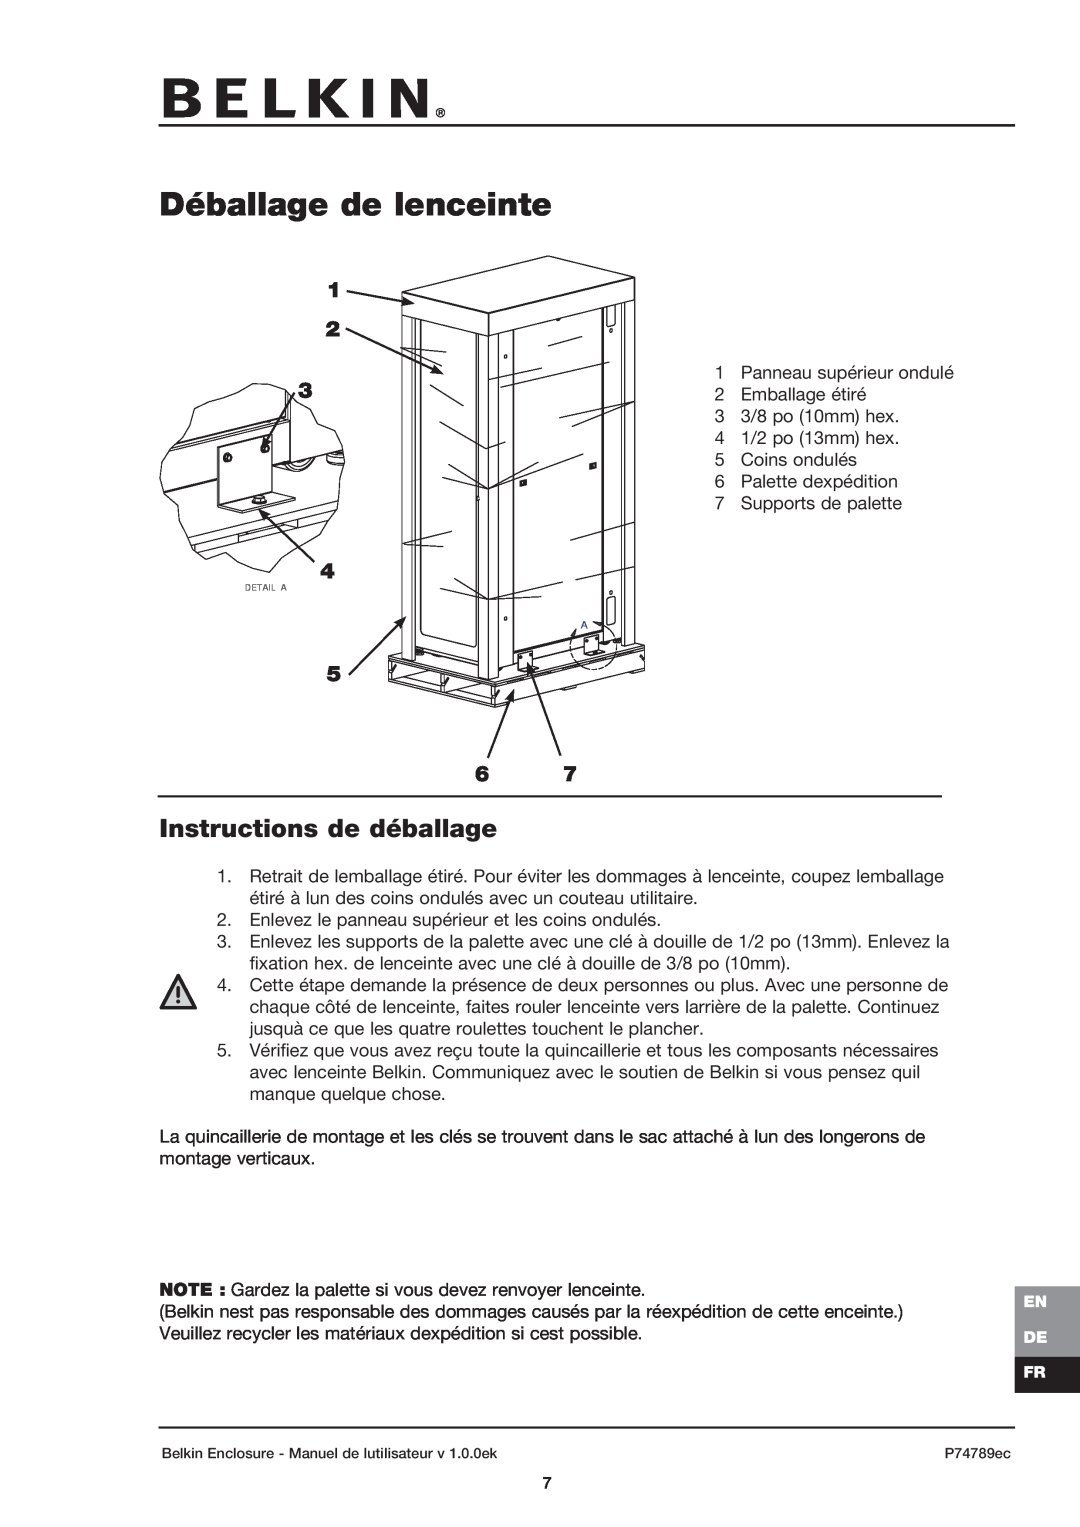 Belkin 42U user manual Déballage de lenceinte, Instructions de déballage 